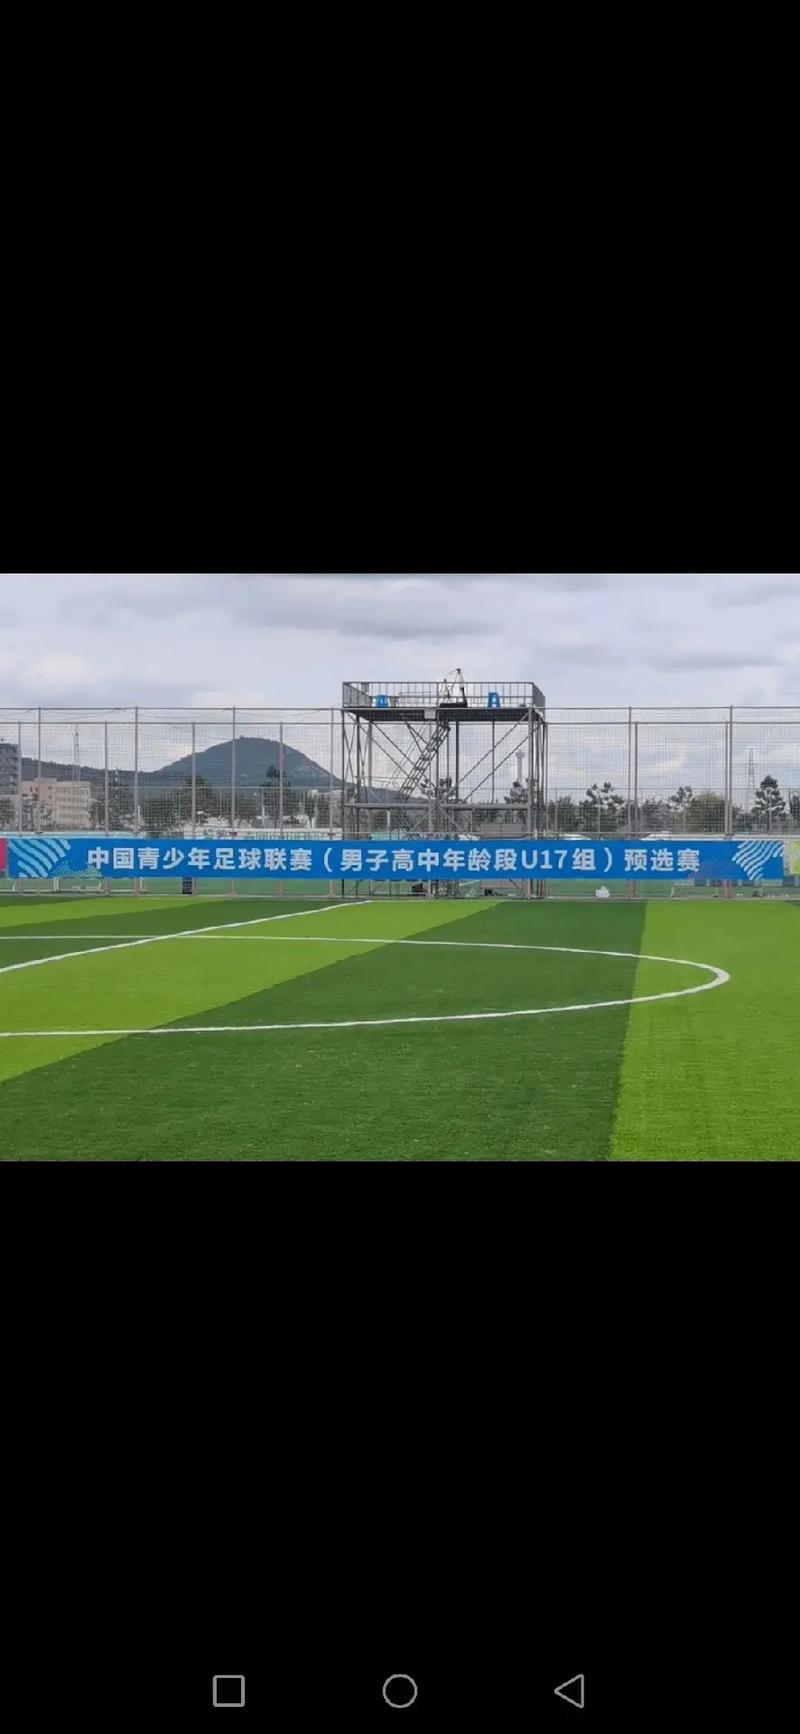 中国延边足球联赛直播时间_中国延边足球联赛直播